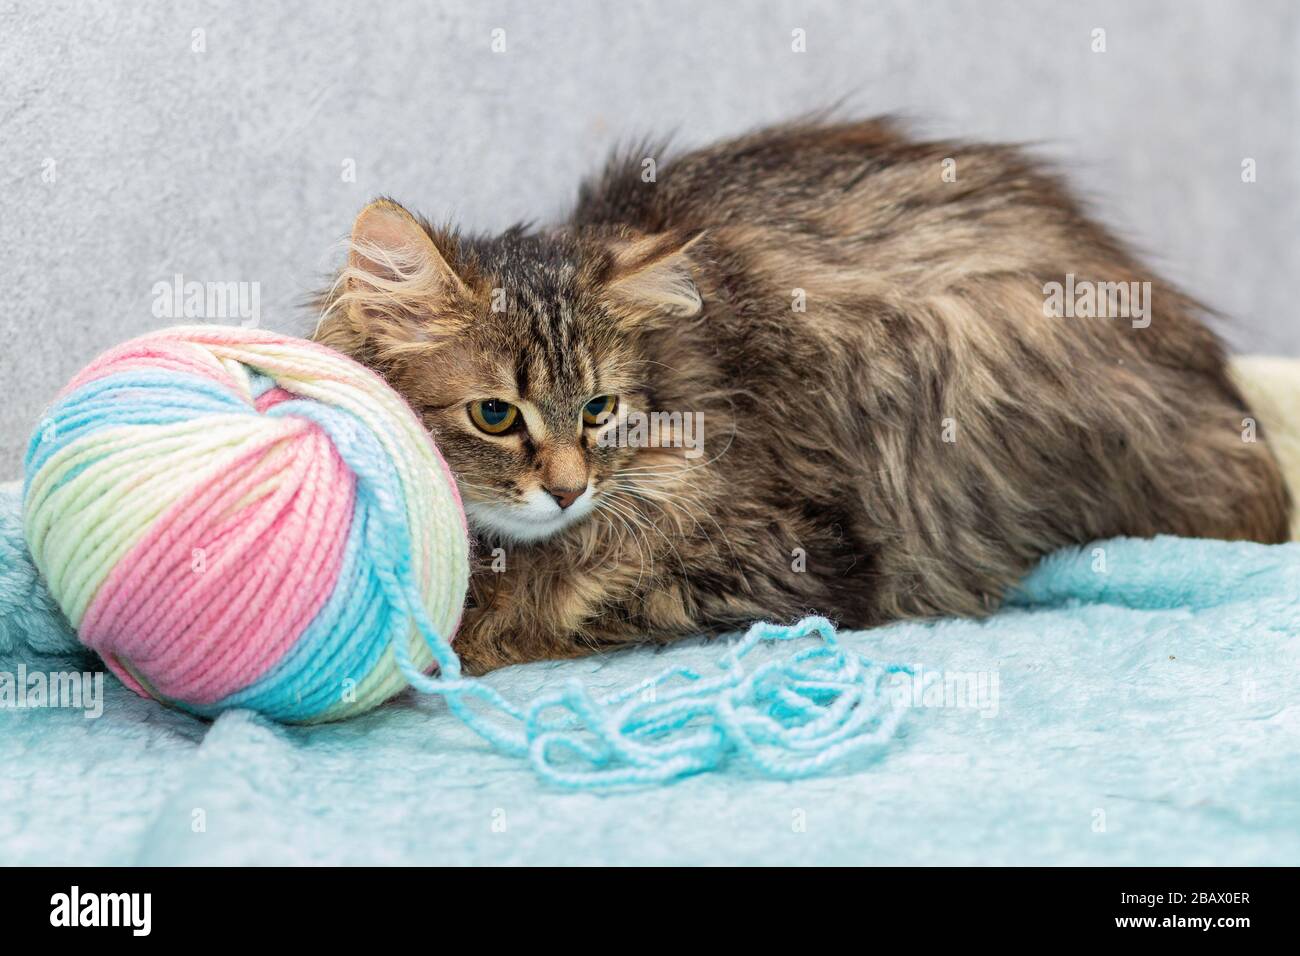 Le chat doux sans breedless se trouve à côté d'un grand enchevêtrement de laine. Banque D'Images